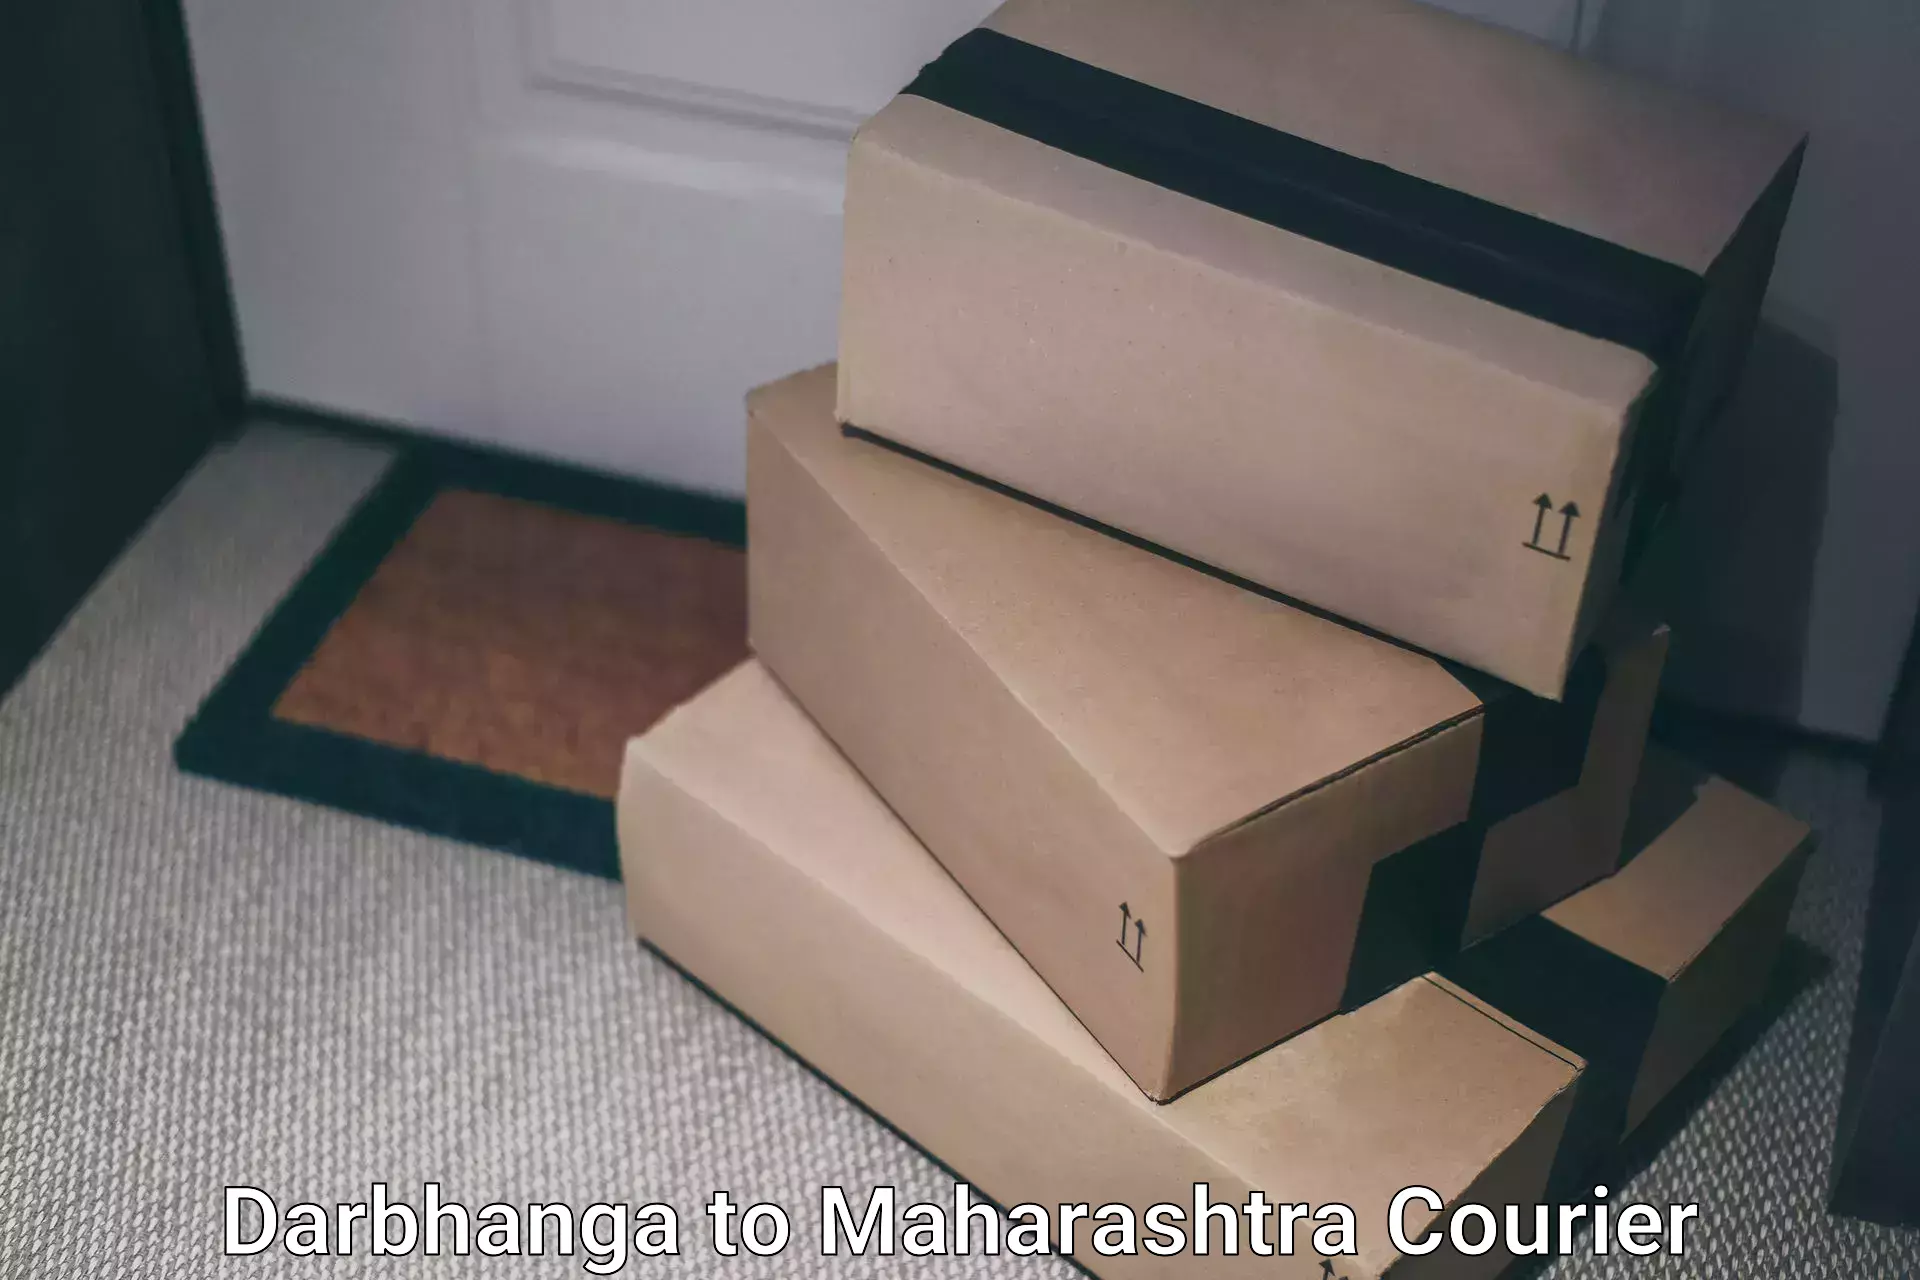 Advanced shipping technology Darbhanga to Kavathe Mahankal